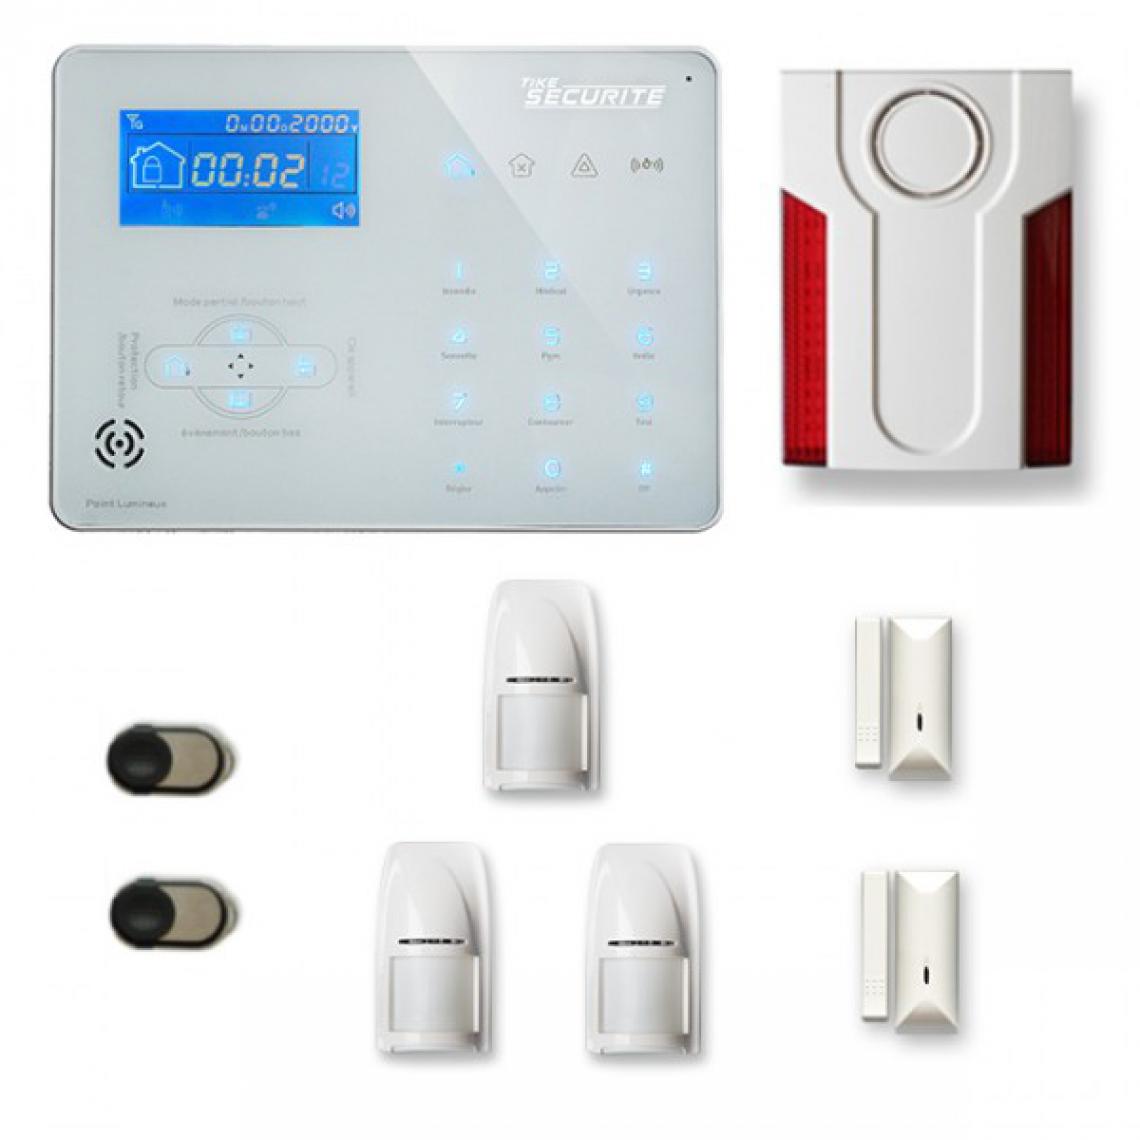 Tike Securite - Alarme maison sans fil ICE-B27 Compatible Box internet - Alarme connectée